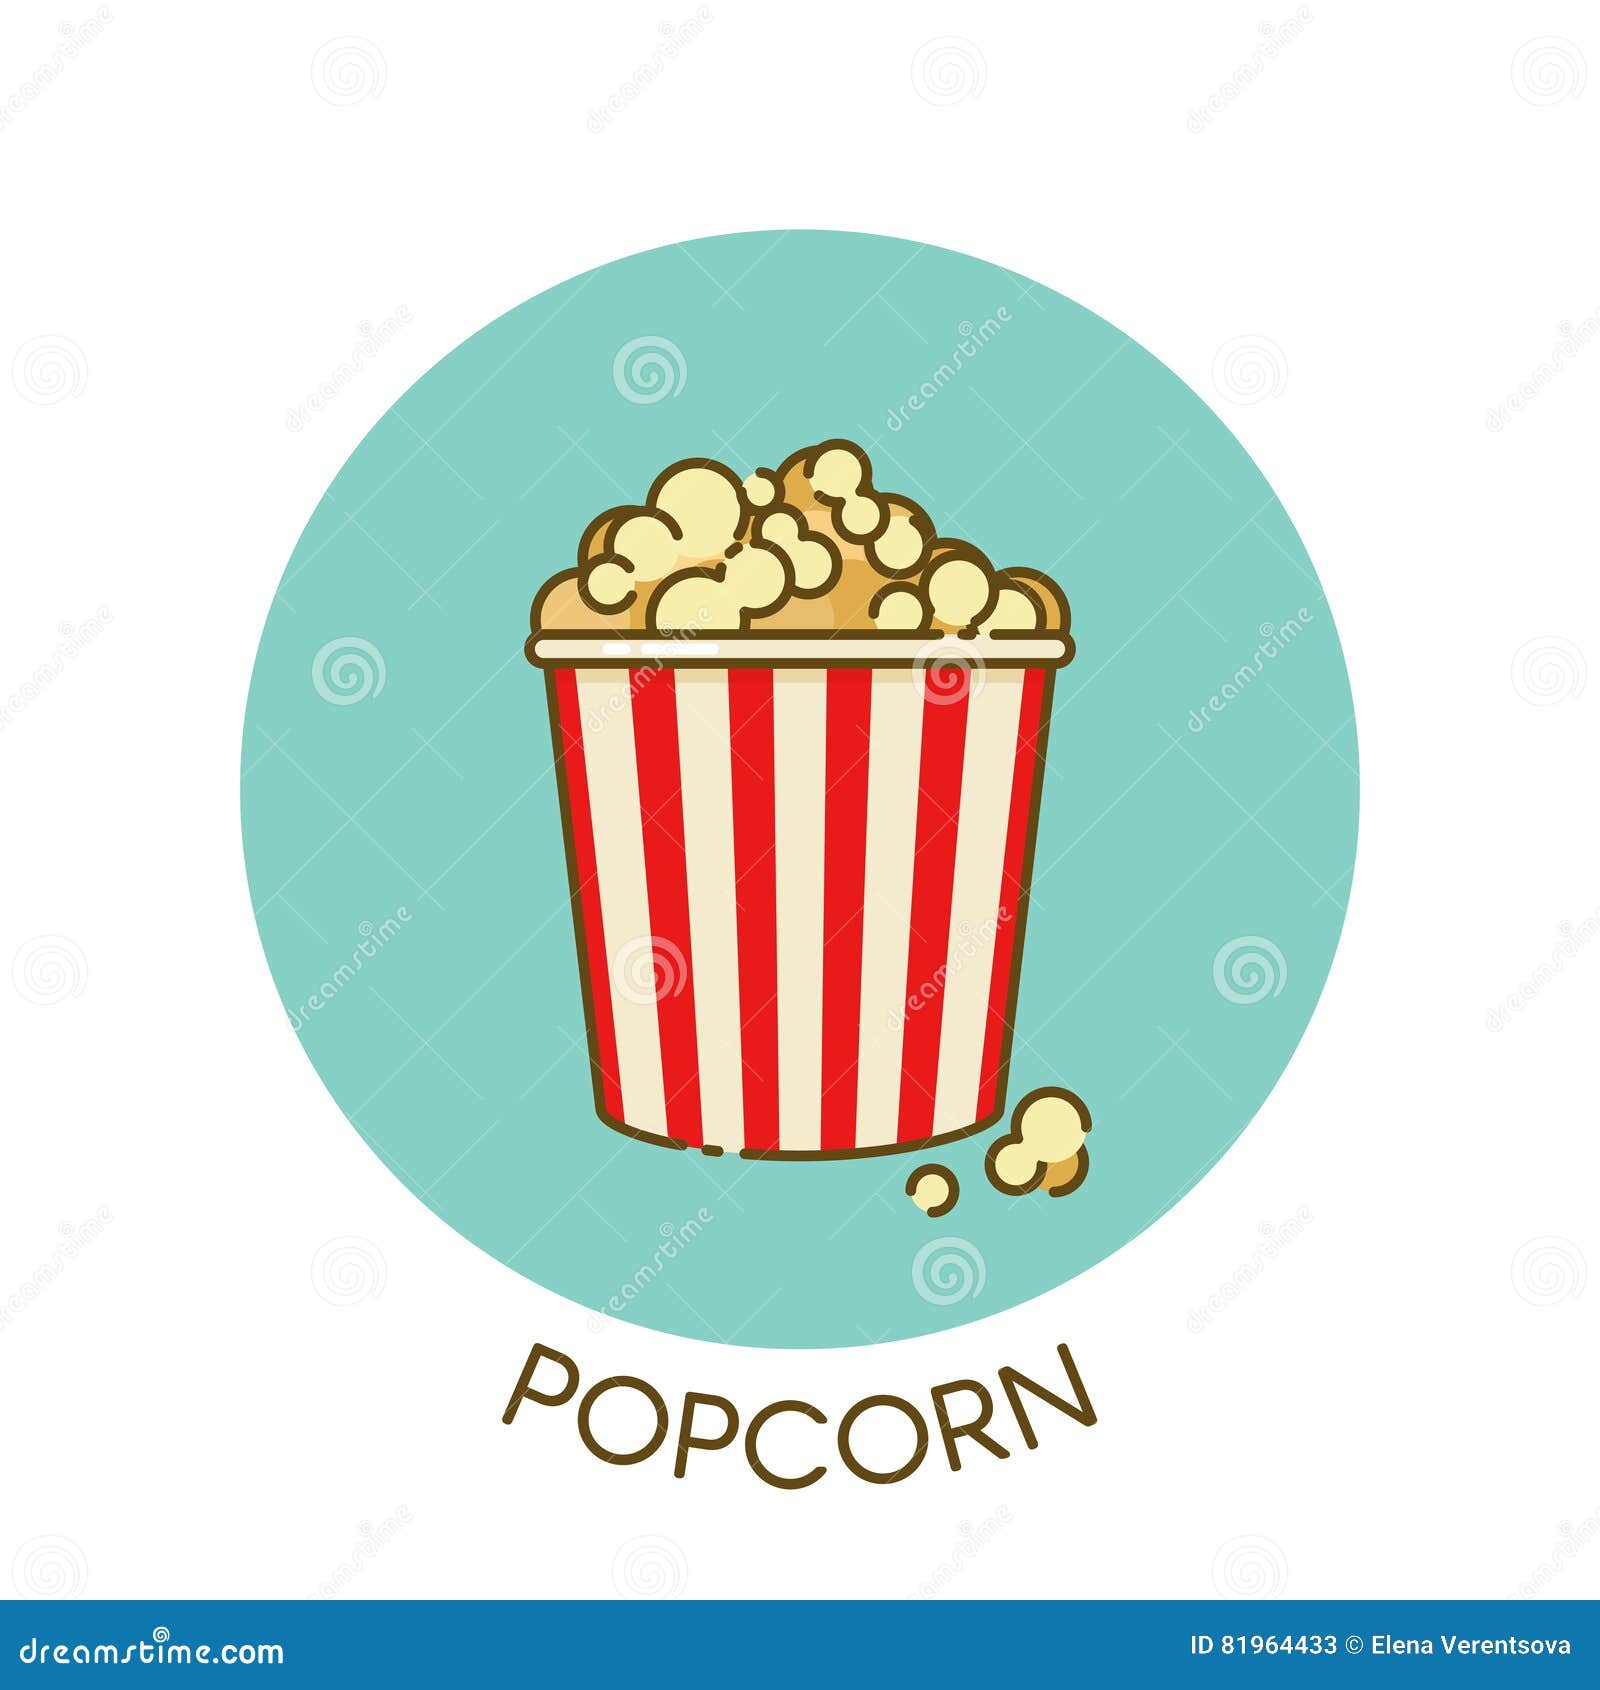 Essay outline of popcorn